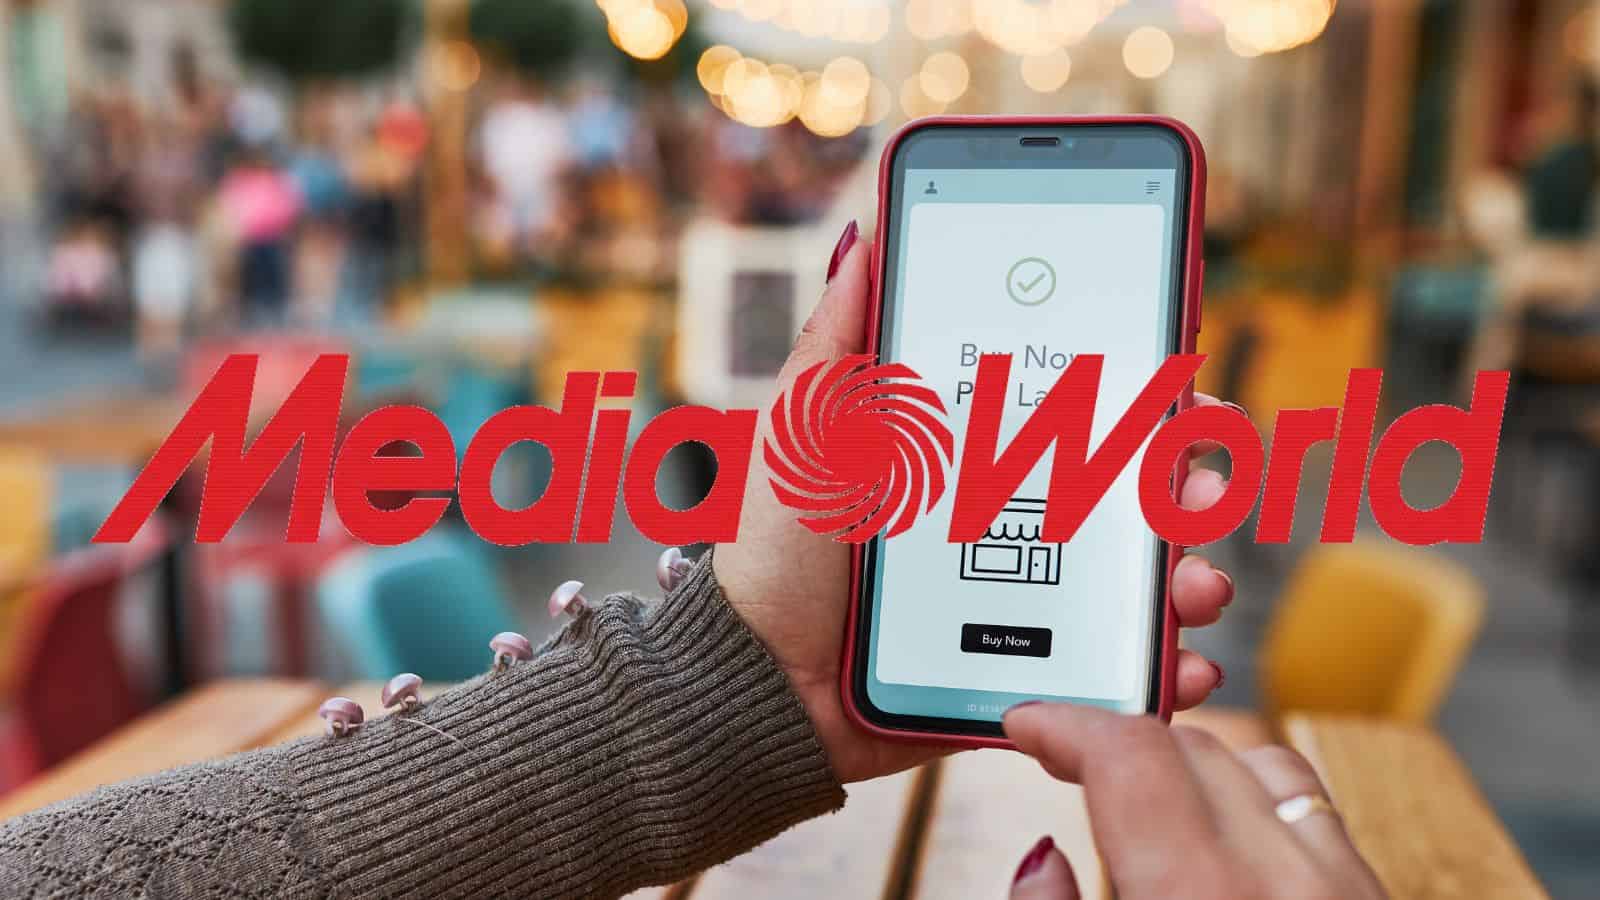 MediaWorld è IMPAZZITA: volantino con smartphone GRATIS e prezzi all'80%